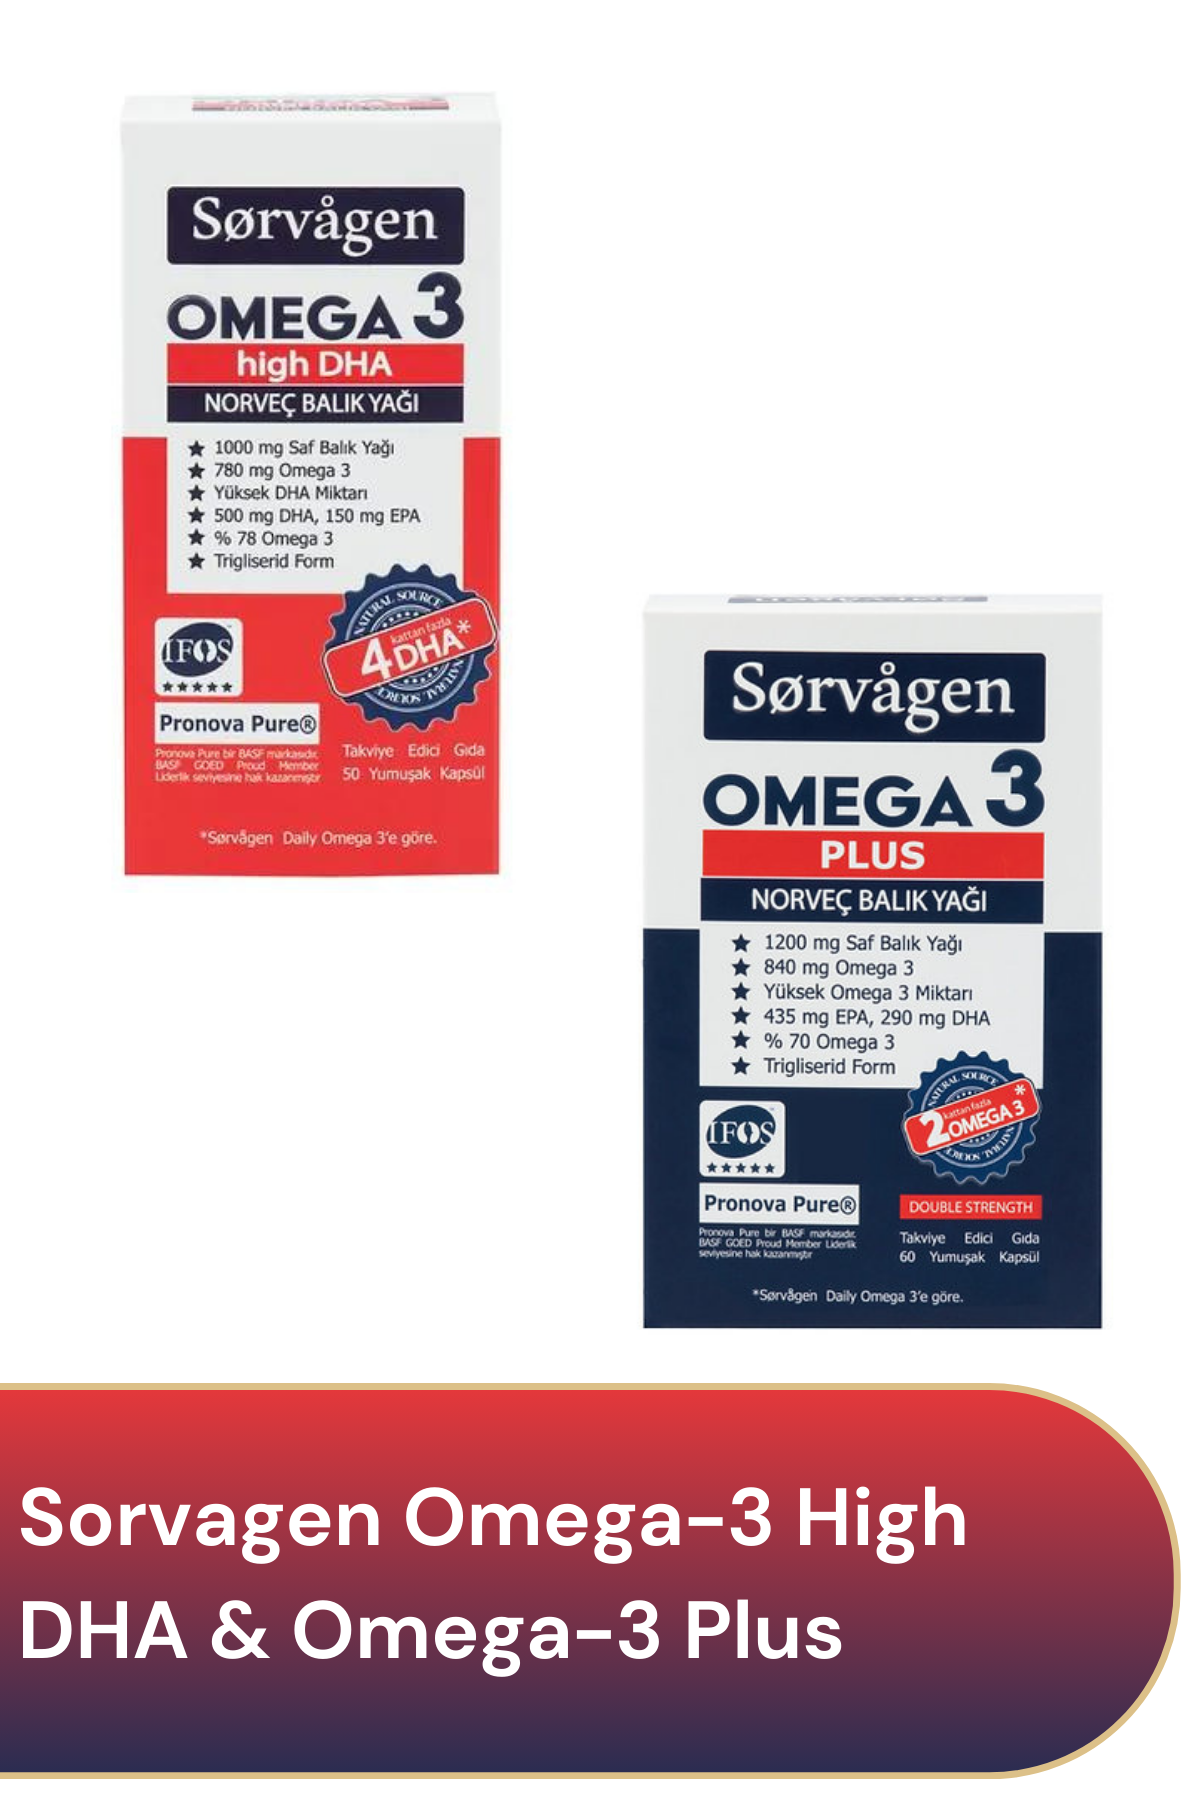 Sorvagen Omega-3 High DHA & Omega-3 Plus